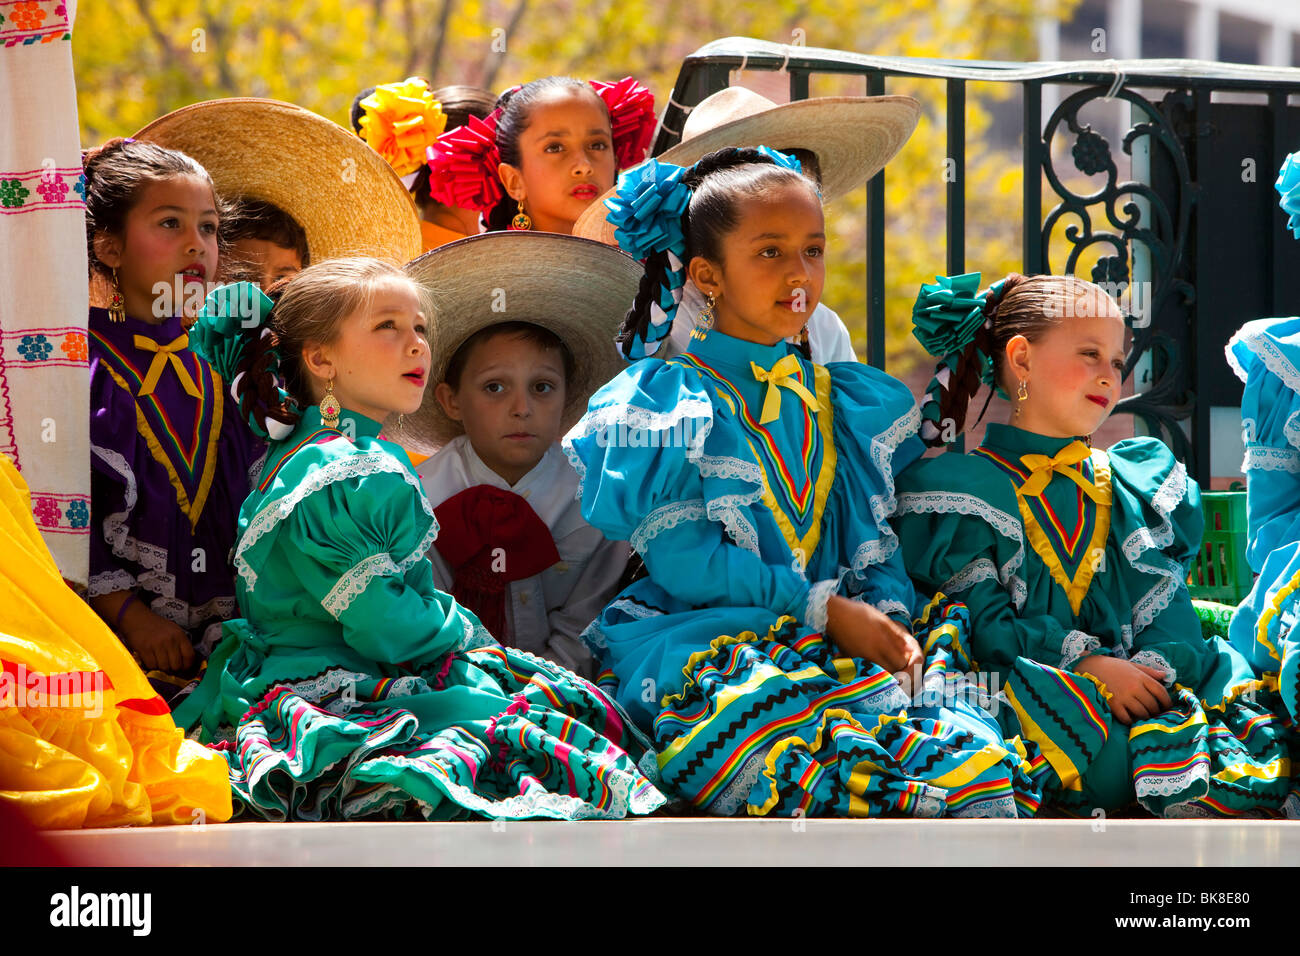 Tradizionale danza messicana per la benedizione degli animali Festival, Olvera Street, il centro cittadino di Los Angeles, California, Stati Uniti d'America Foto Stock